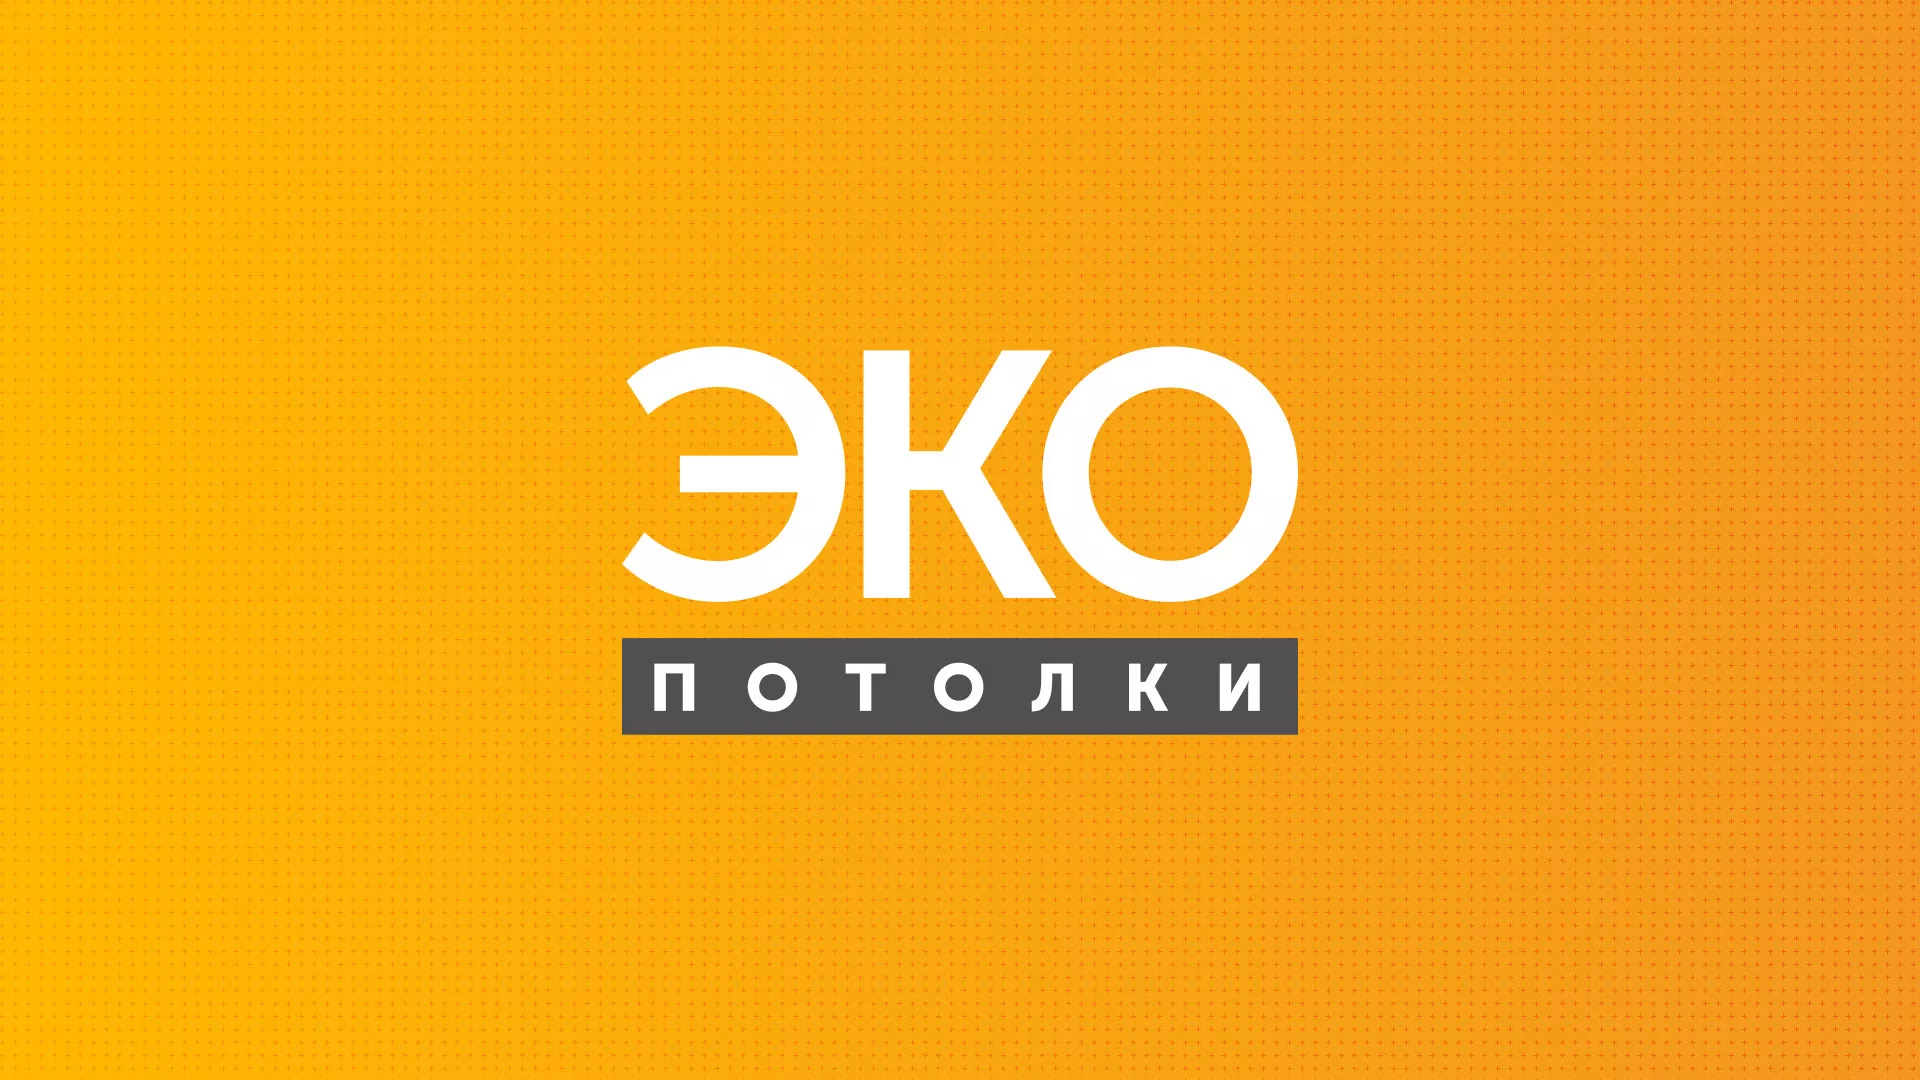 Разработка сайта по натяжным потолкам «Эко Потолки» в Александровске-Сахалинском